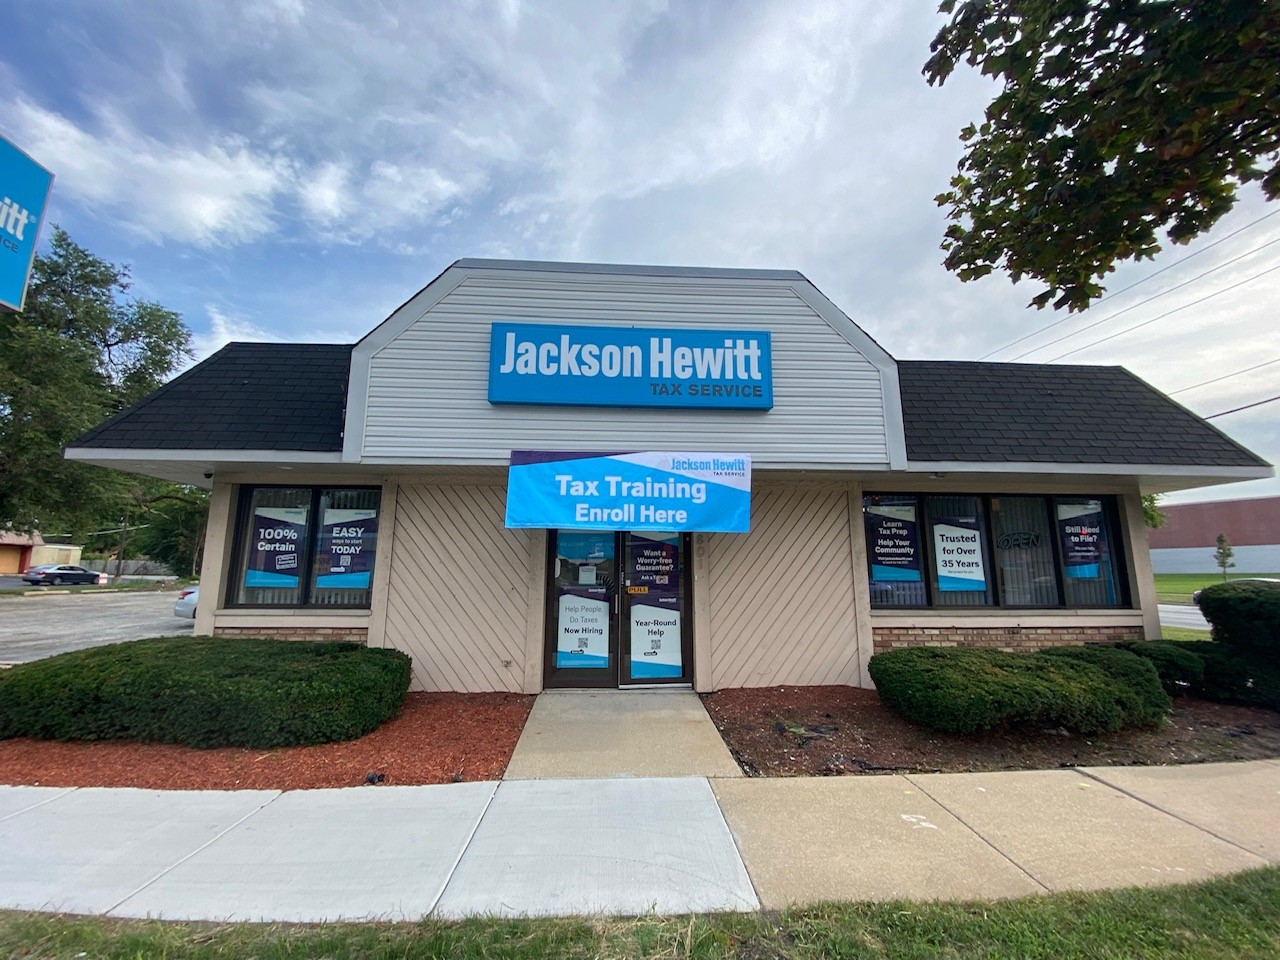 Jackson Hewitt Tax Service 801 Sibley Blvd, Dolton Illinois 60419